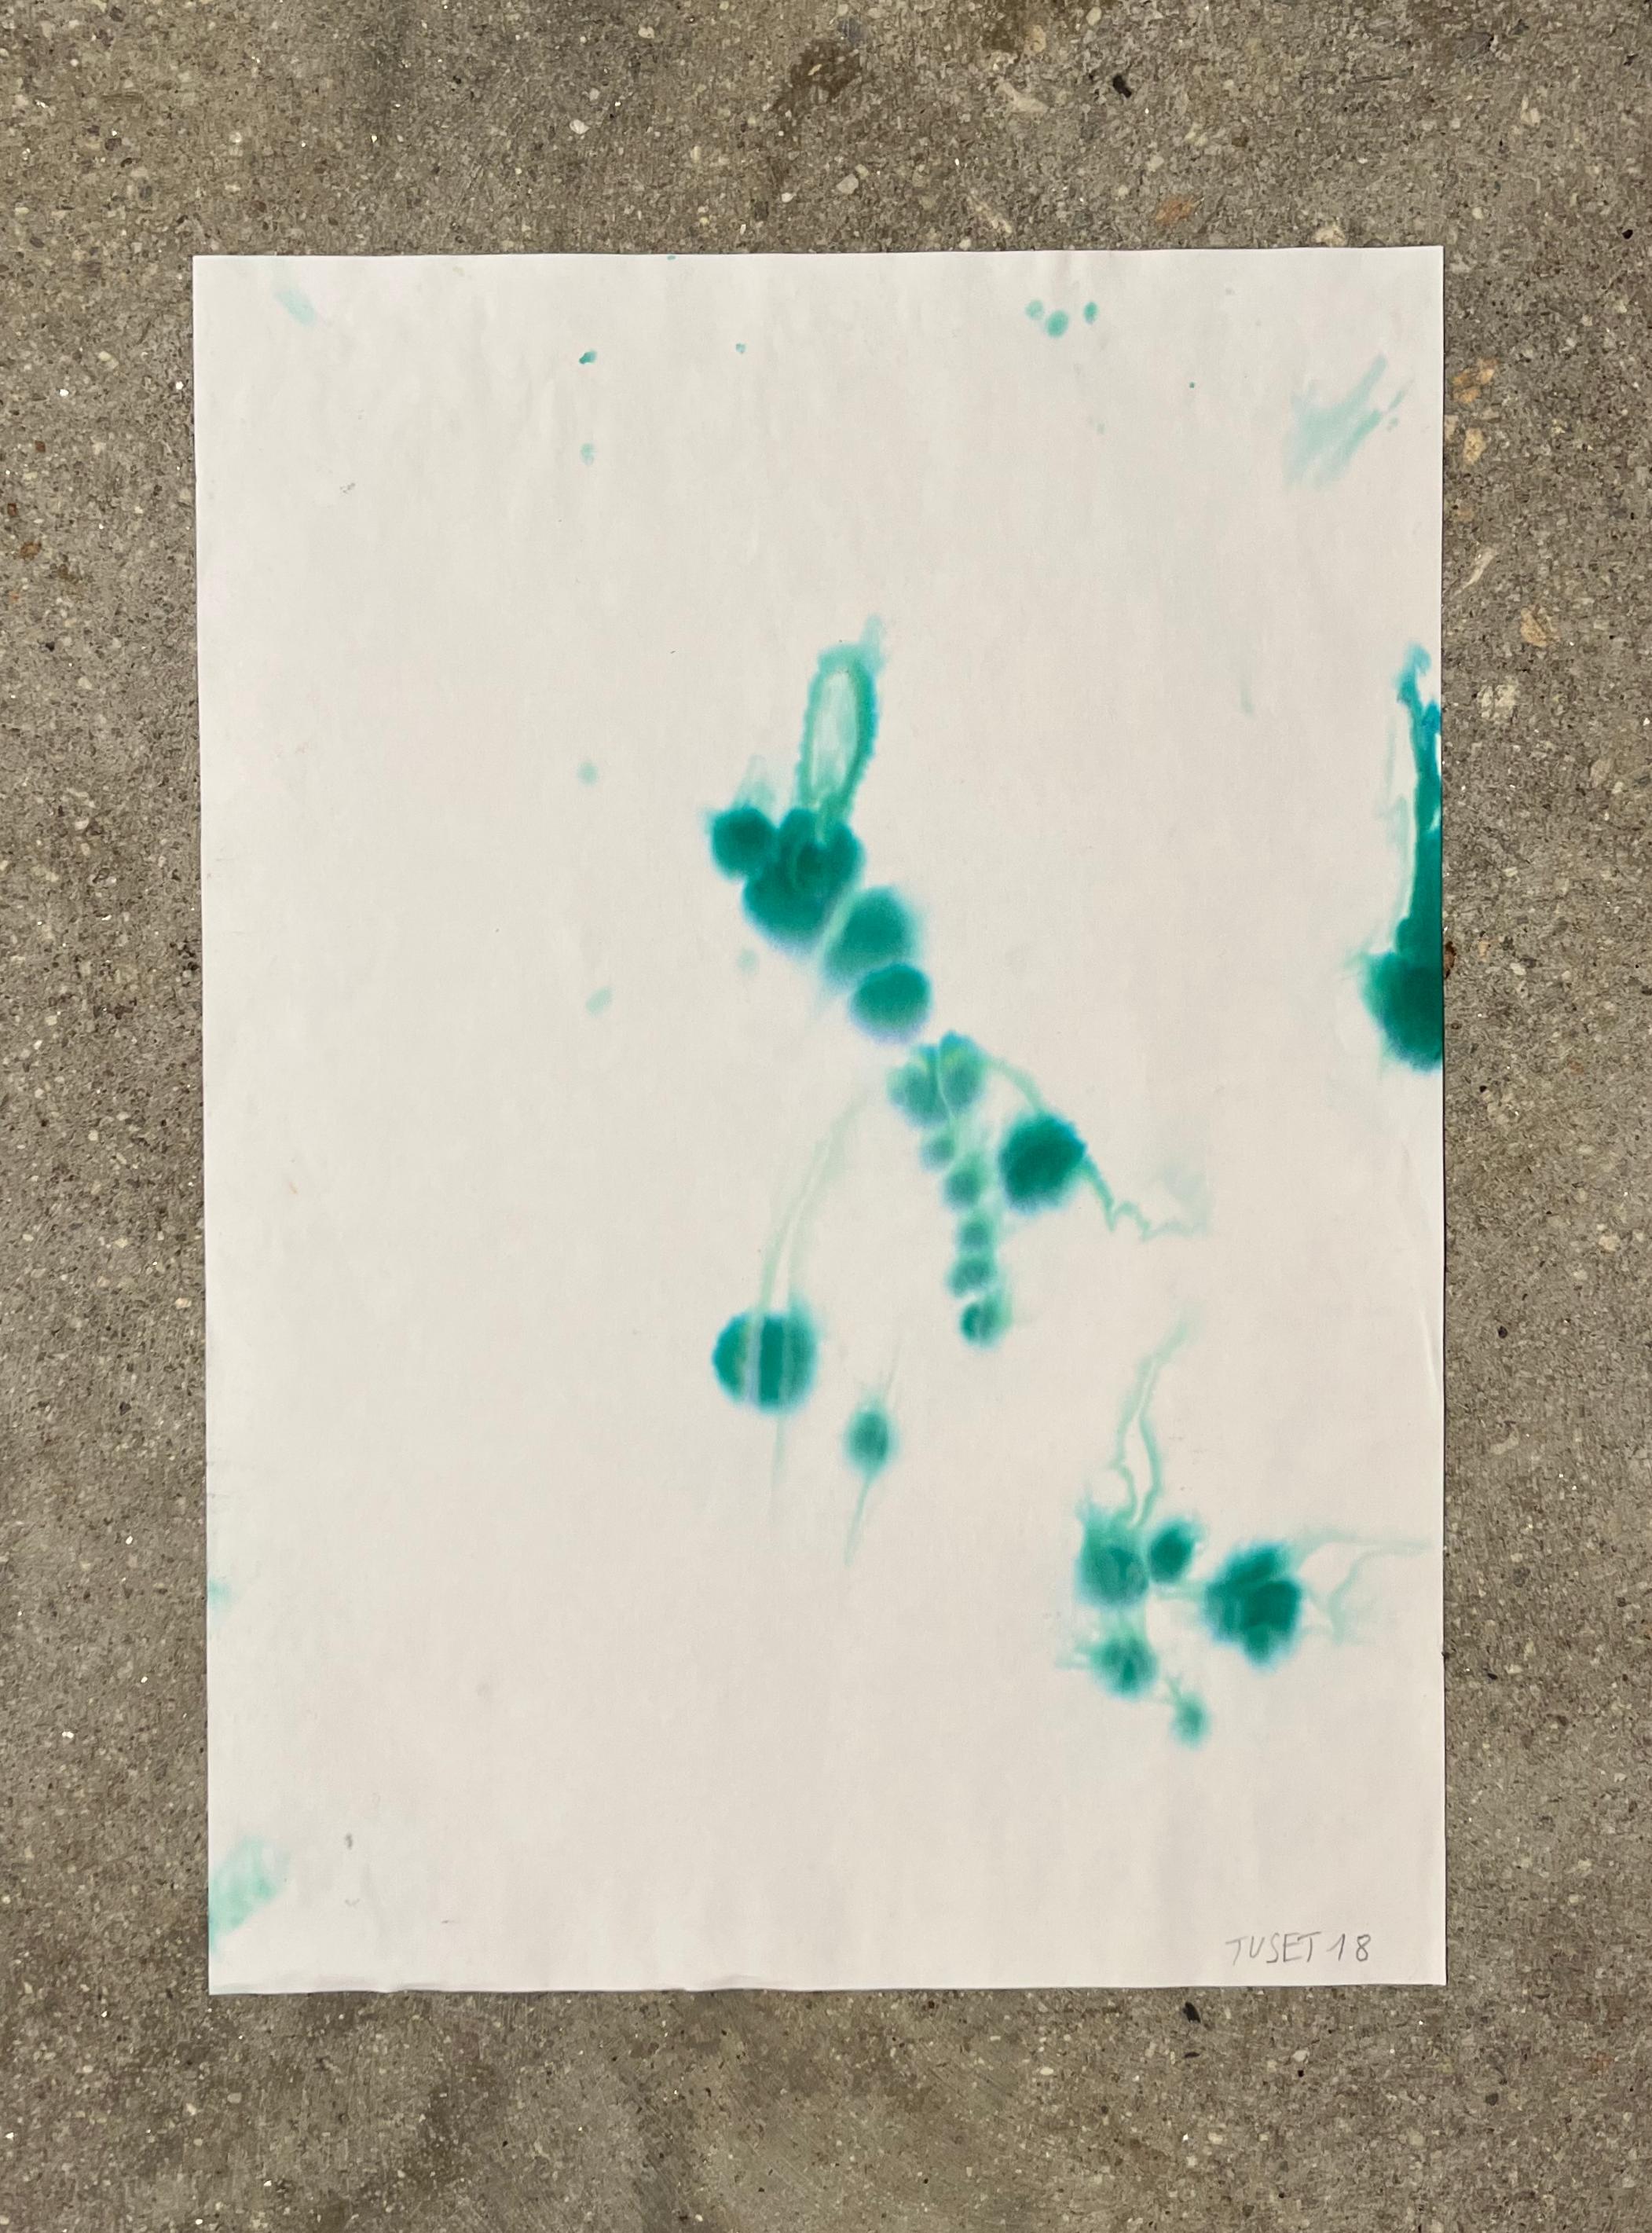 Wassertropfen, Meer, Grün, signiertes, neoexpressionistisches Gemälde (Neue Wilde), Art, von TUSET